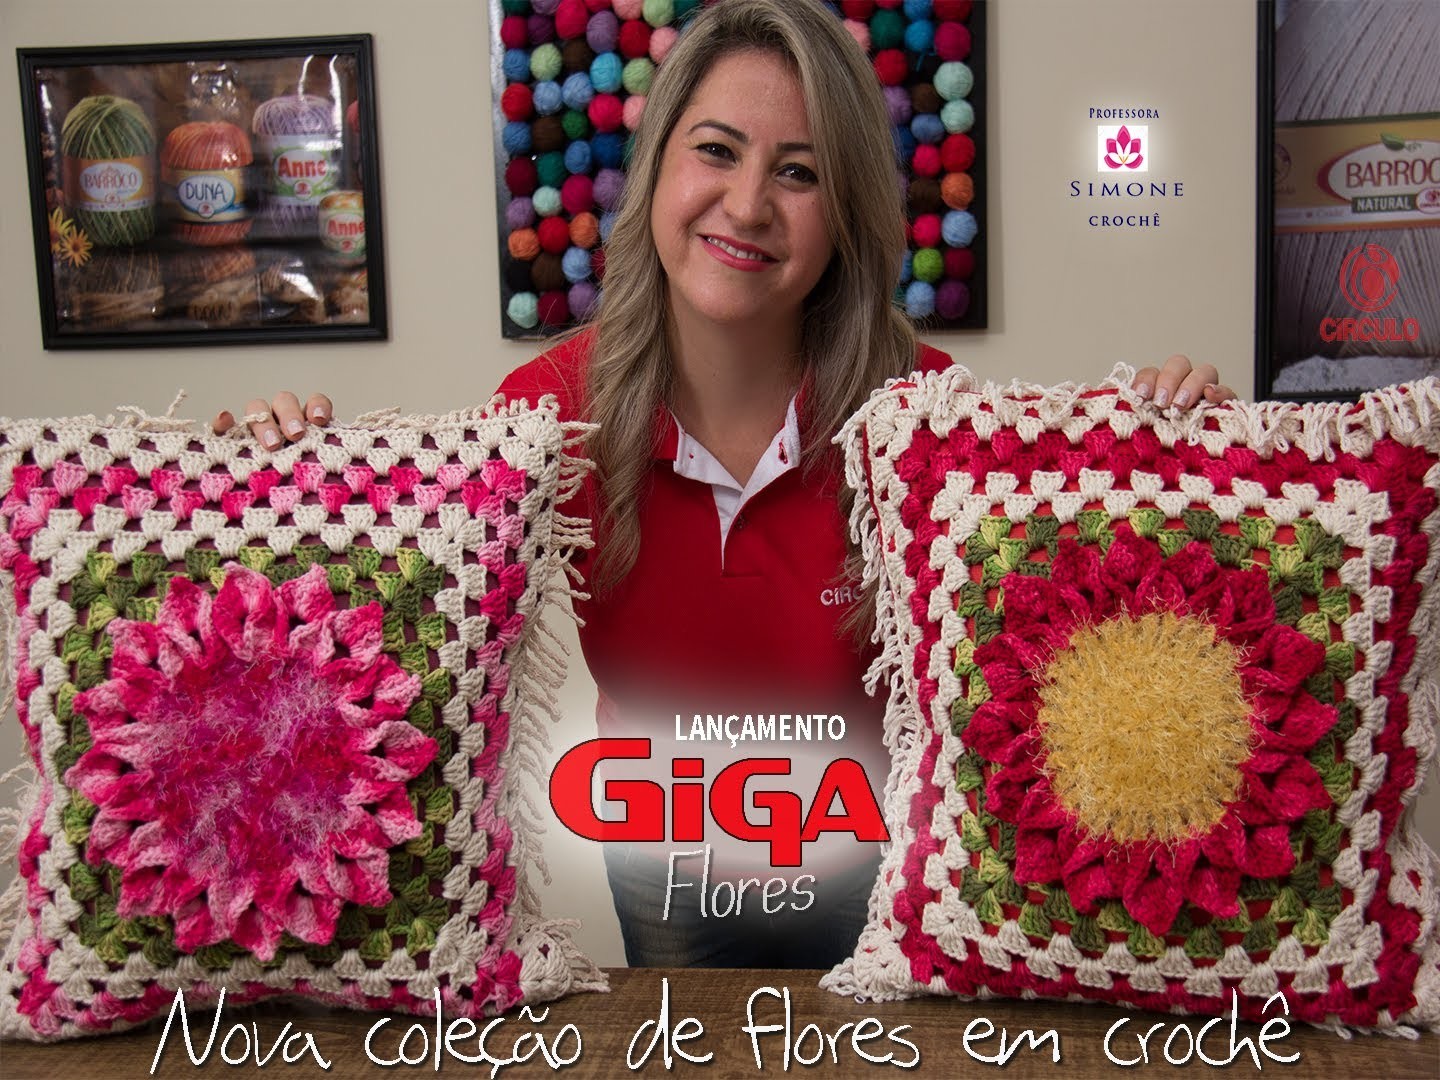 Lançamento Giga Flores em Crochê - Professora Simone